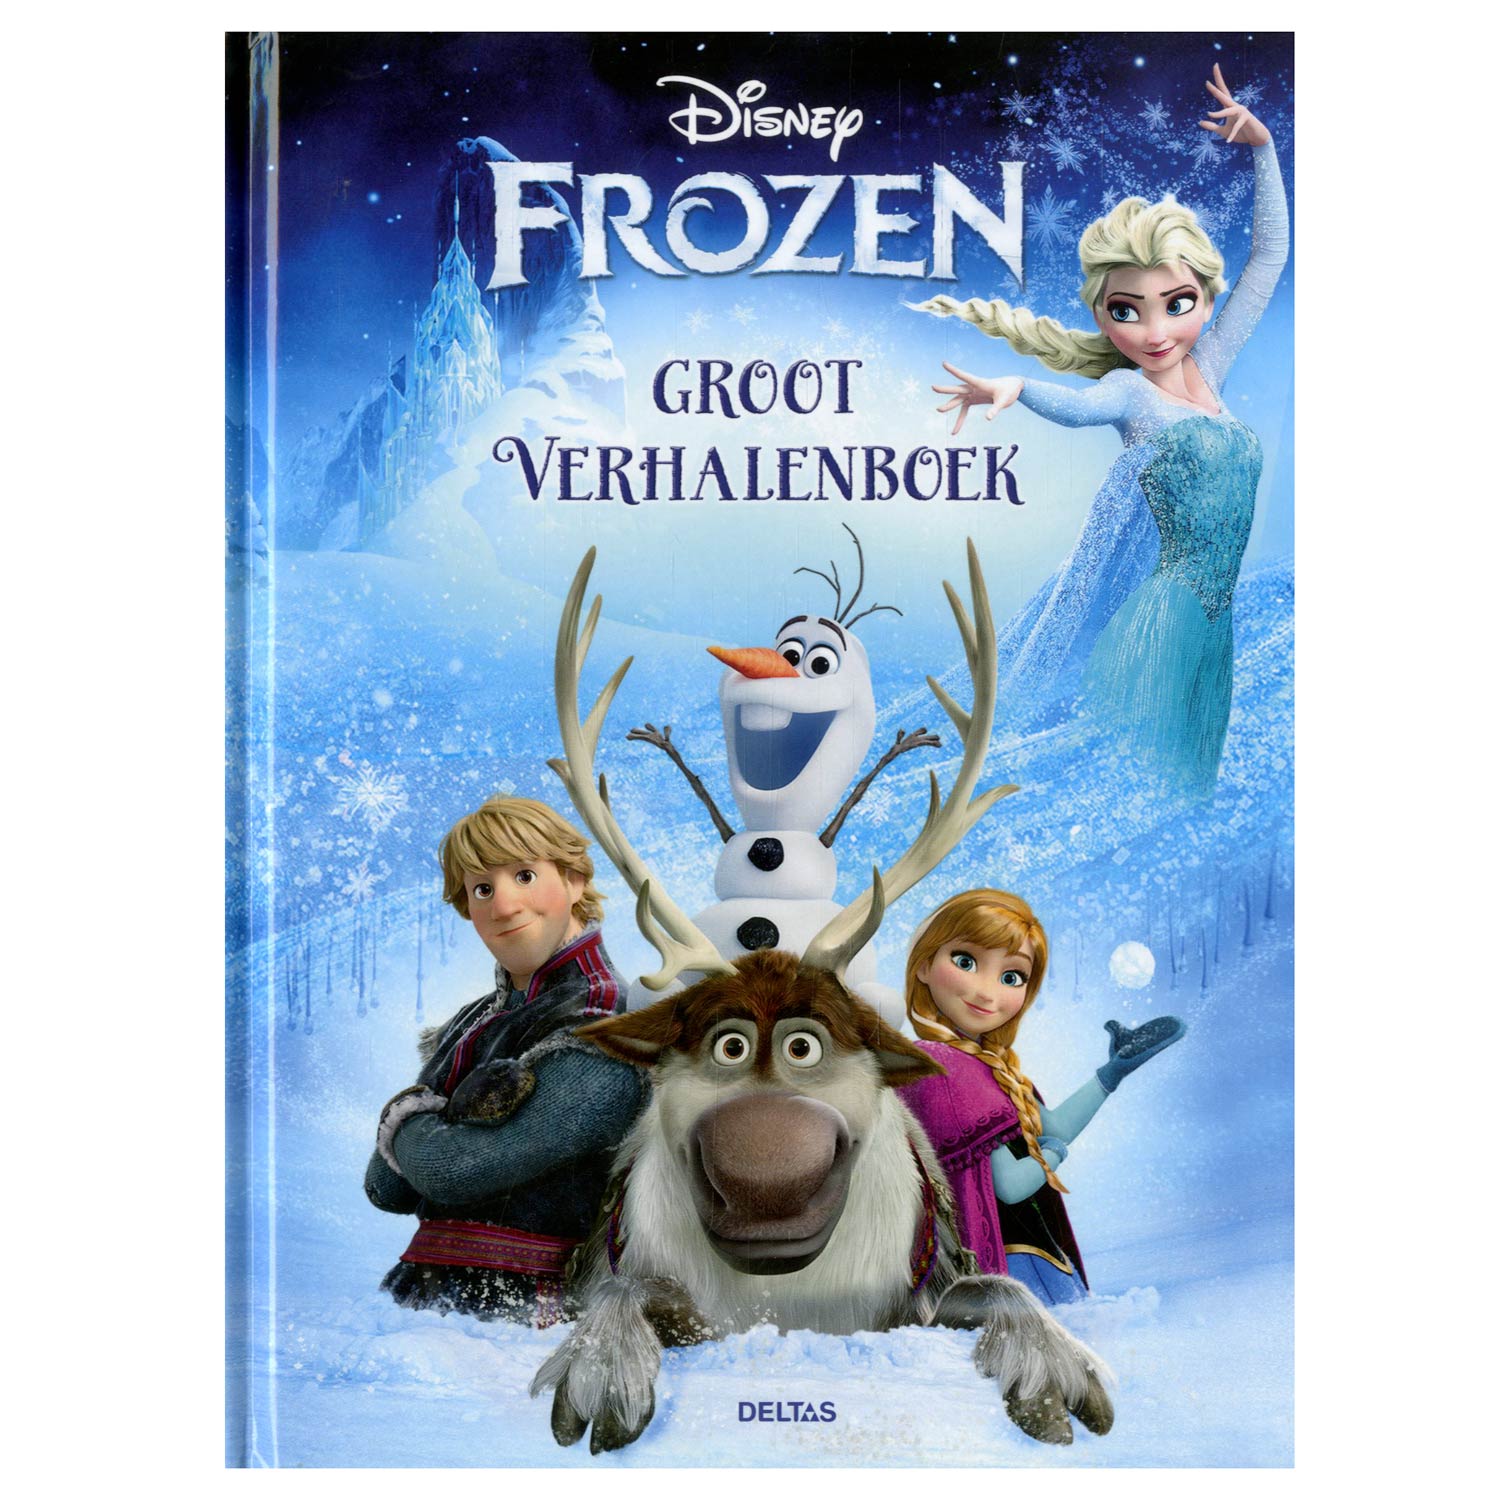 Disney Frozen Groot Verhalenboek.